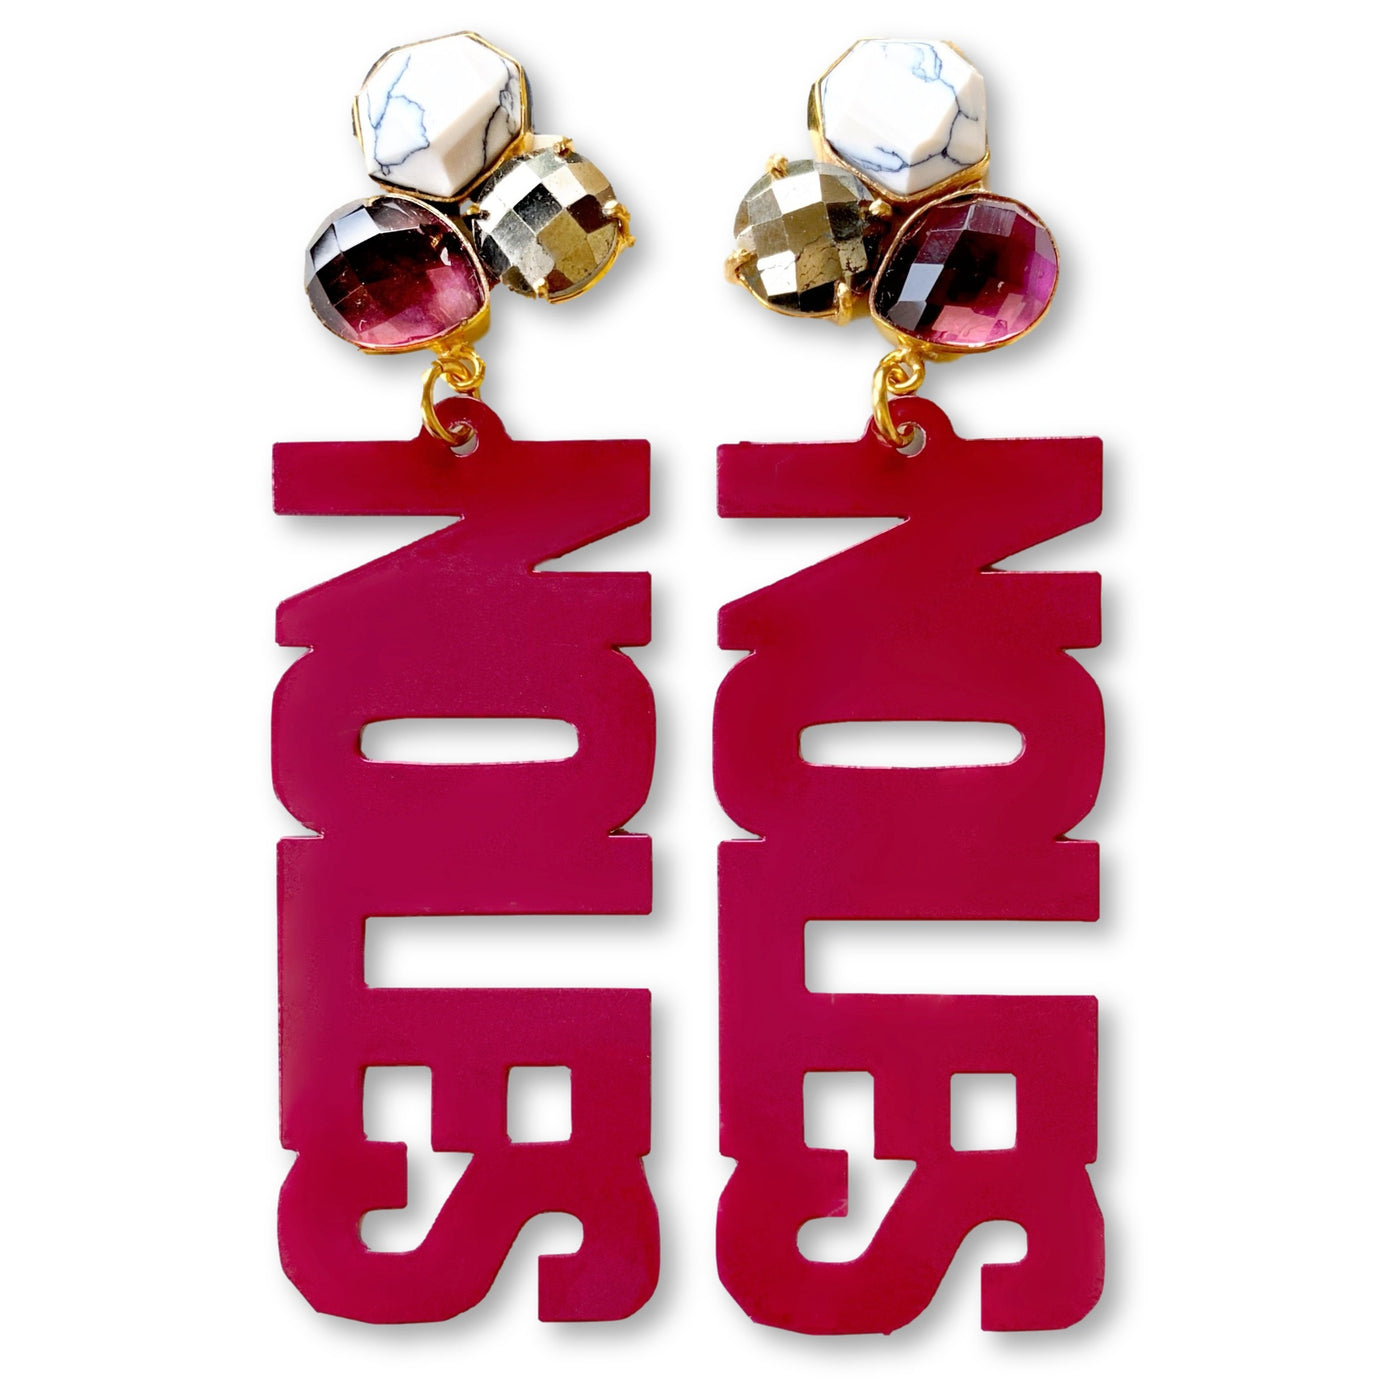 FSU Garnet NOLES Earrings with 3 Gemstones